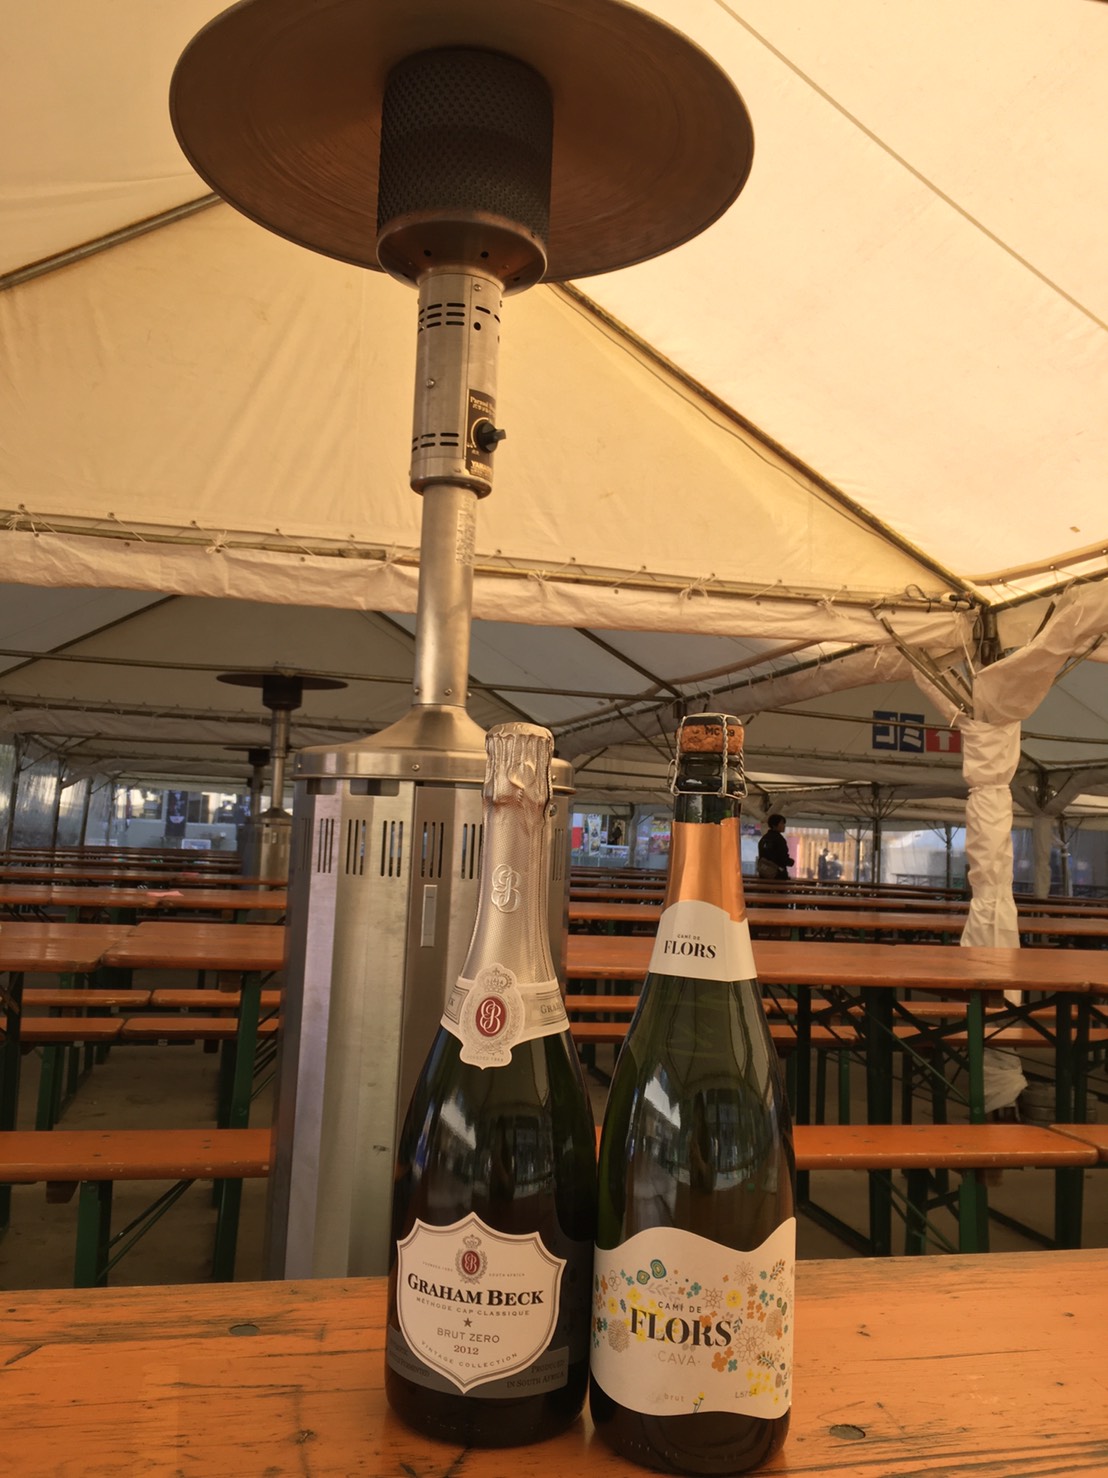 新宿 大久保公園に出現 席数600 テントで覆われ ストーブ完備の暖かい快適空間 Newscast